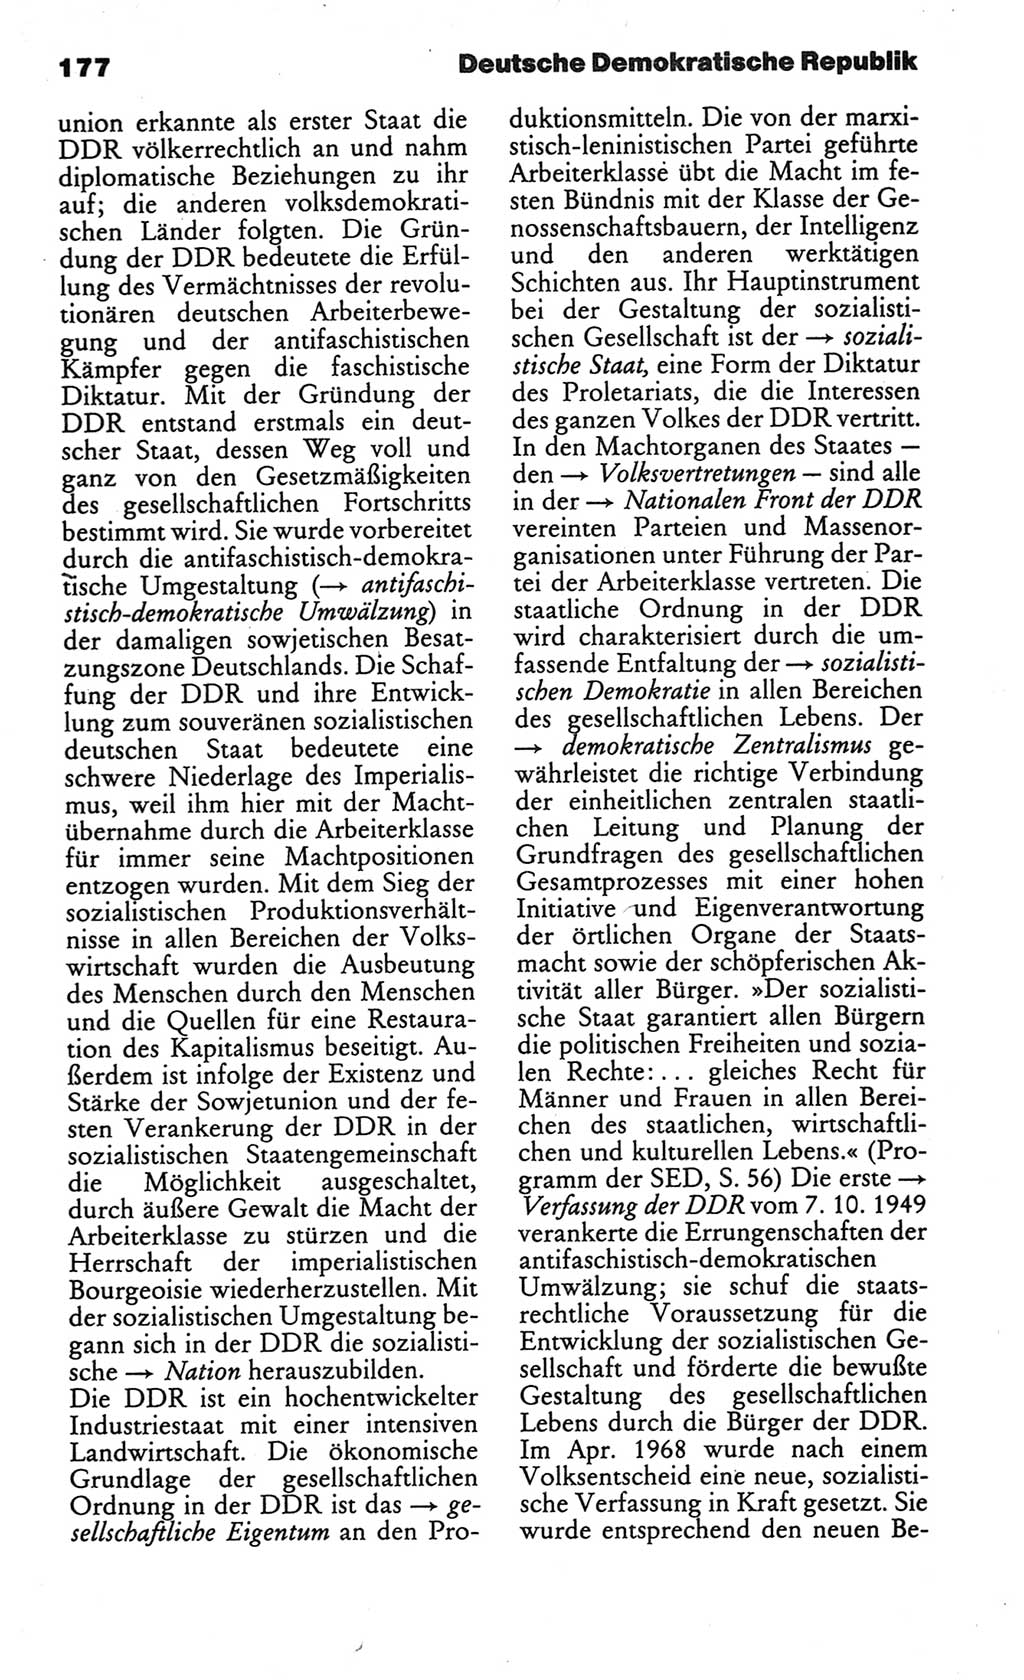 Kleines politisches Wörterbuch [Deutsche Demokratische Republik (DDR)] 1986, Seite 177 (Kl. pol. Wb. DDR 1986, S. 177)